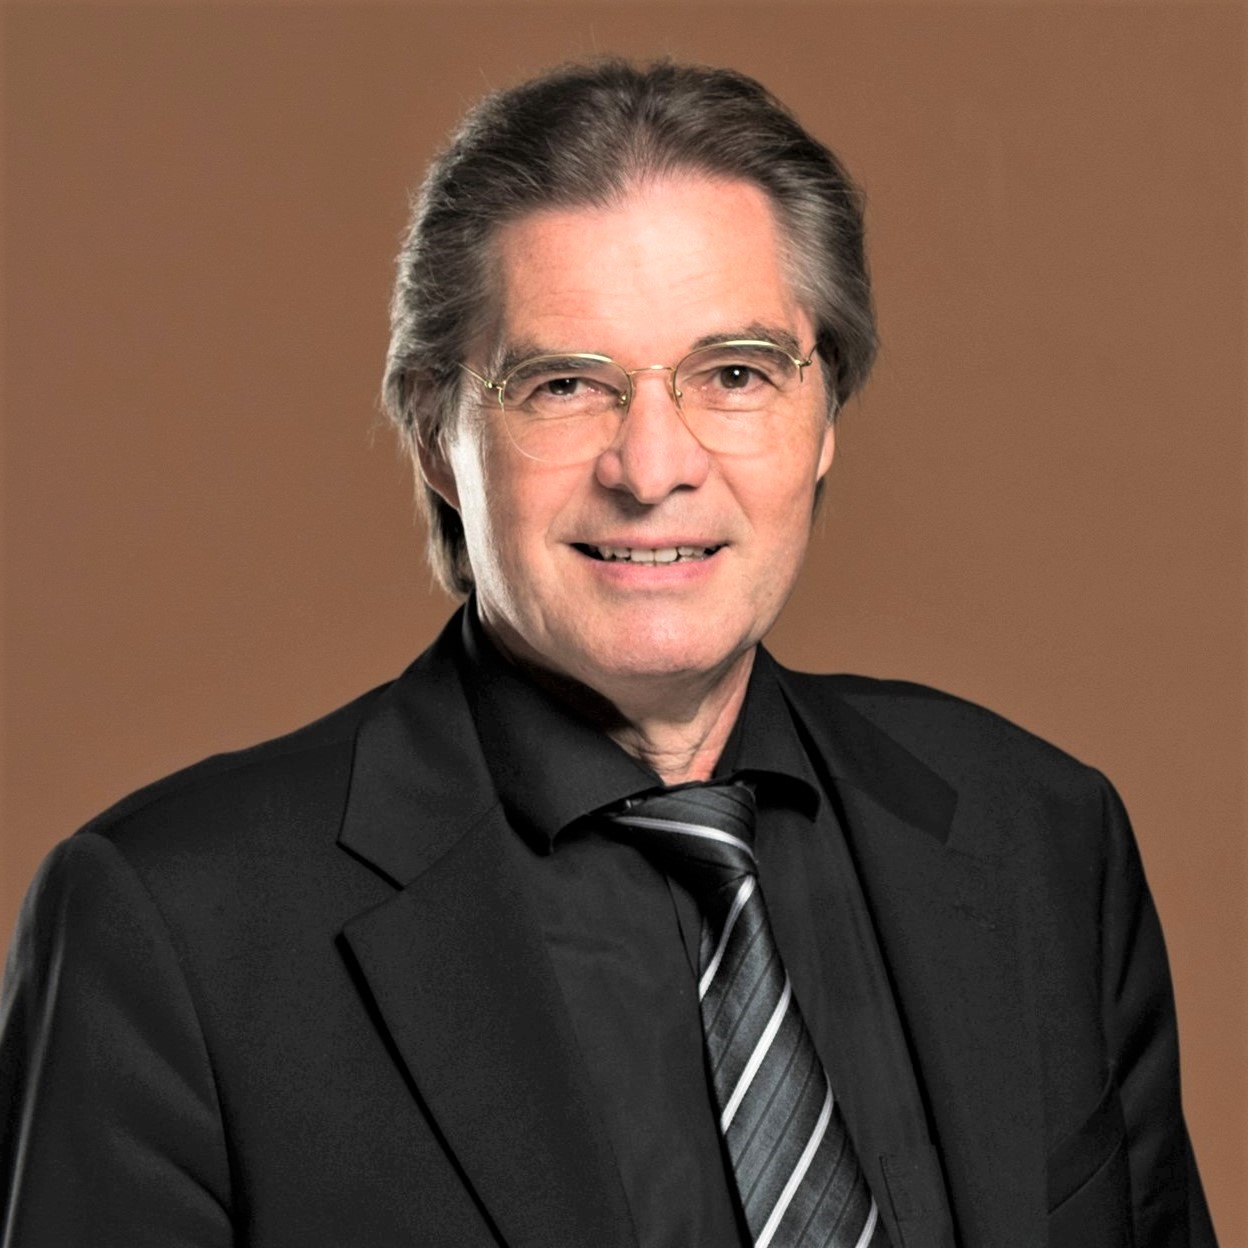 Michael Hässig